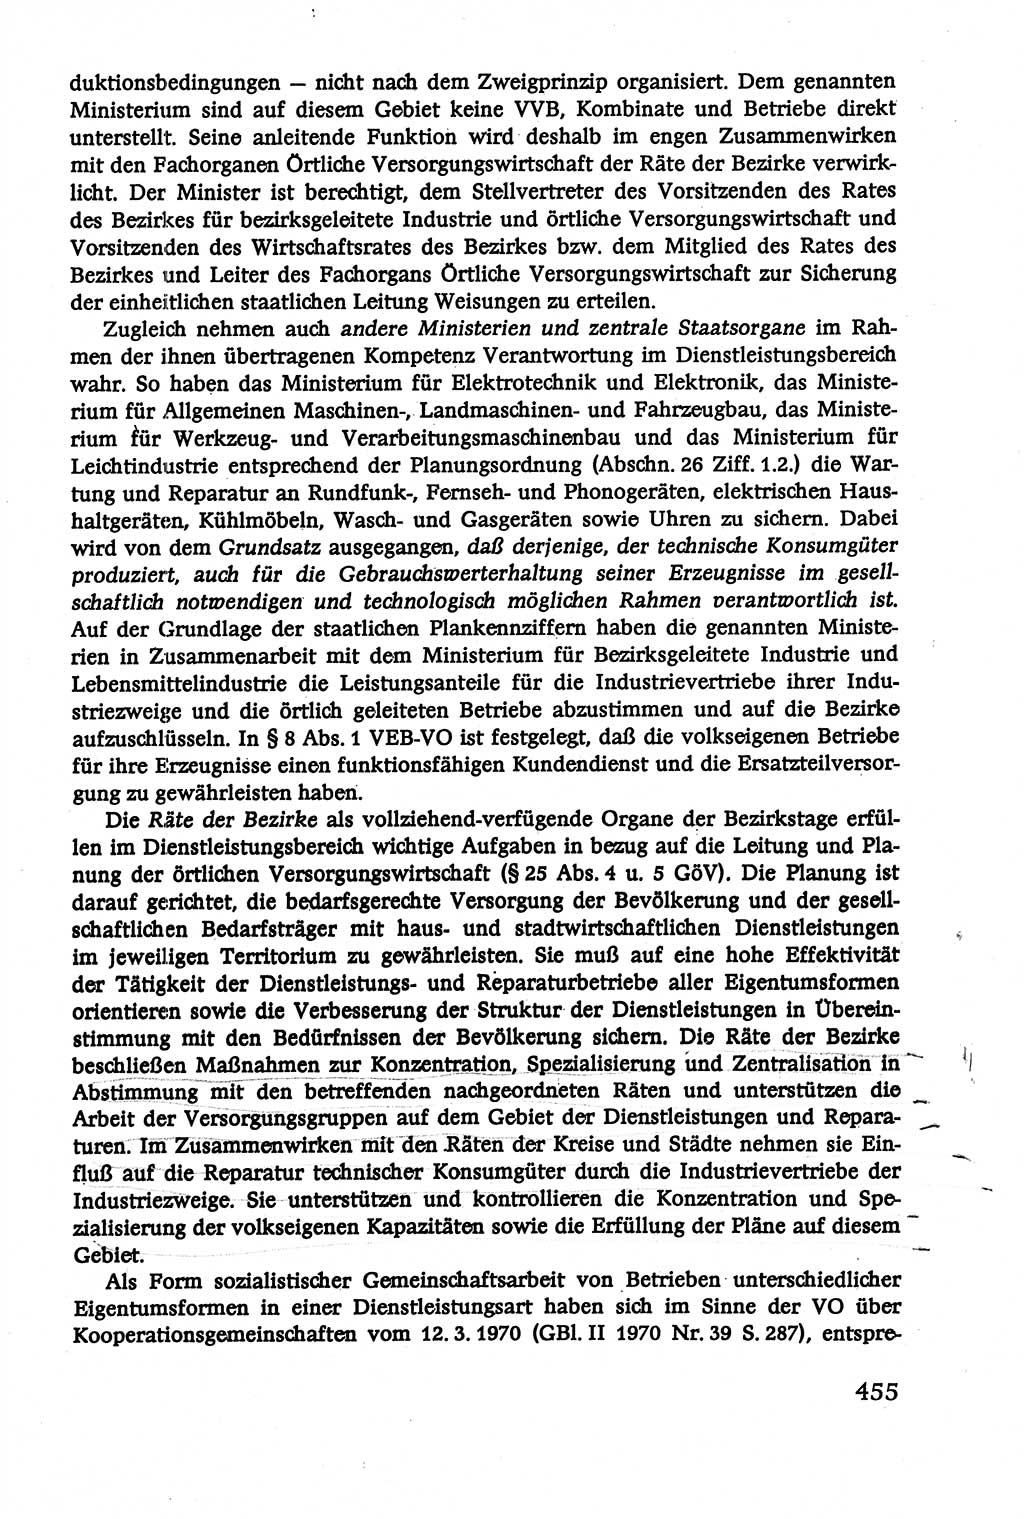 Verwaltungsrecht [Deutsche Demokratische Republik (DDR)], Lehrbuch 1979, Seite 455 (Verw.-R. DDR Lb. 1979, S. 455)